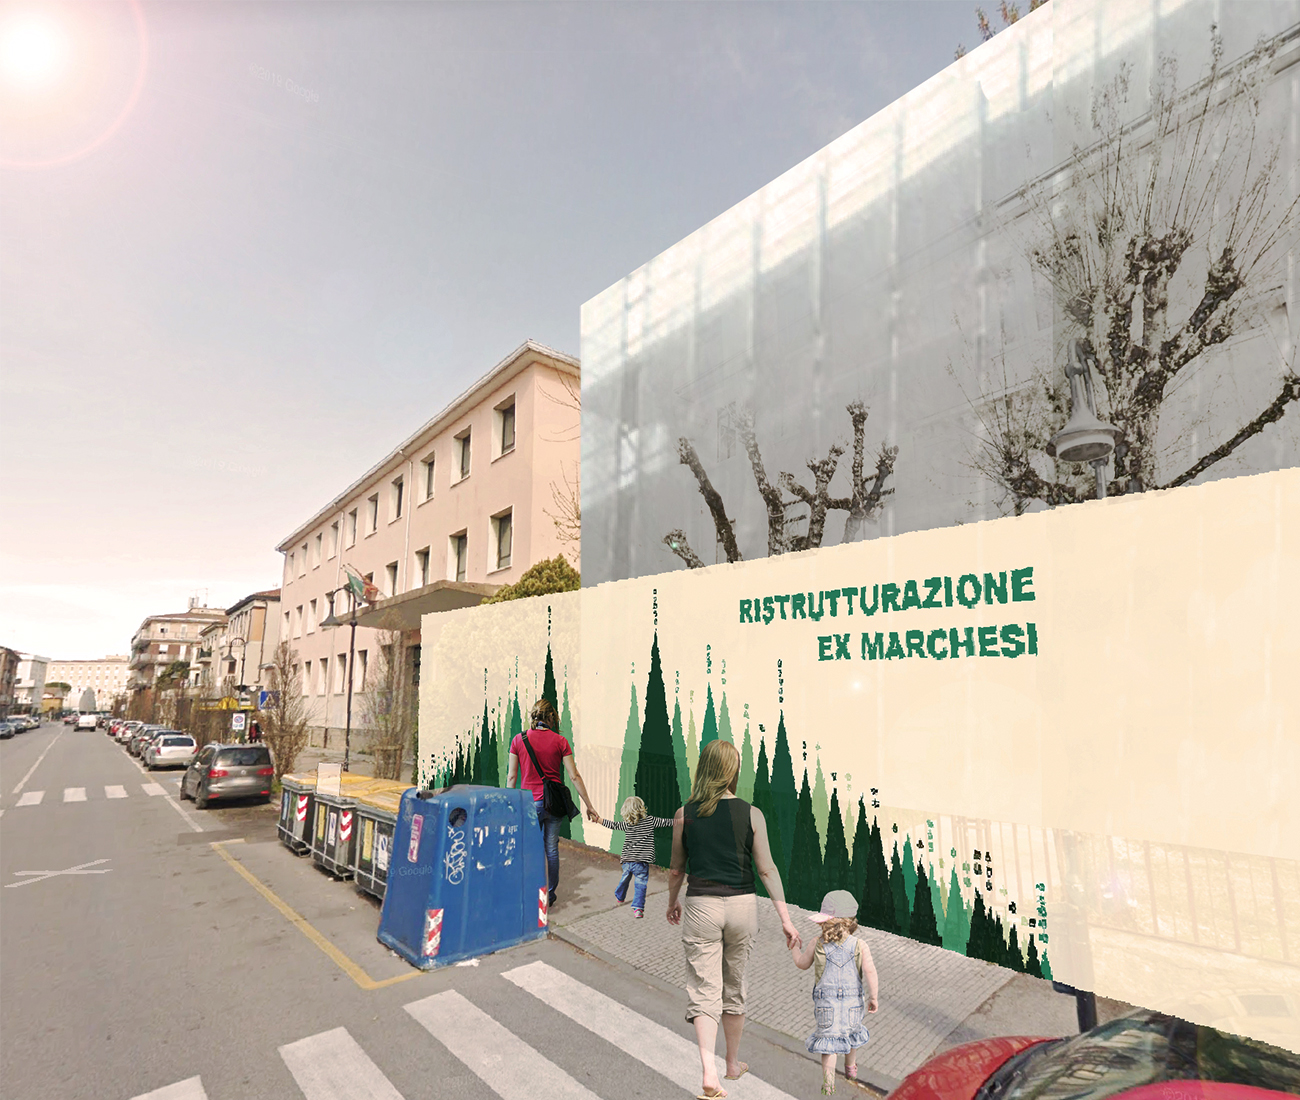 Ristrutturazione "Ex Marchesi" nel quartiere Arcella a Padova